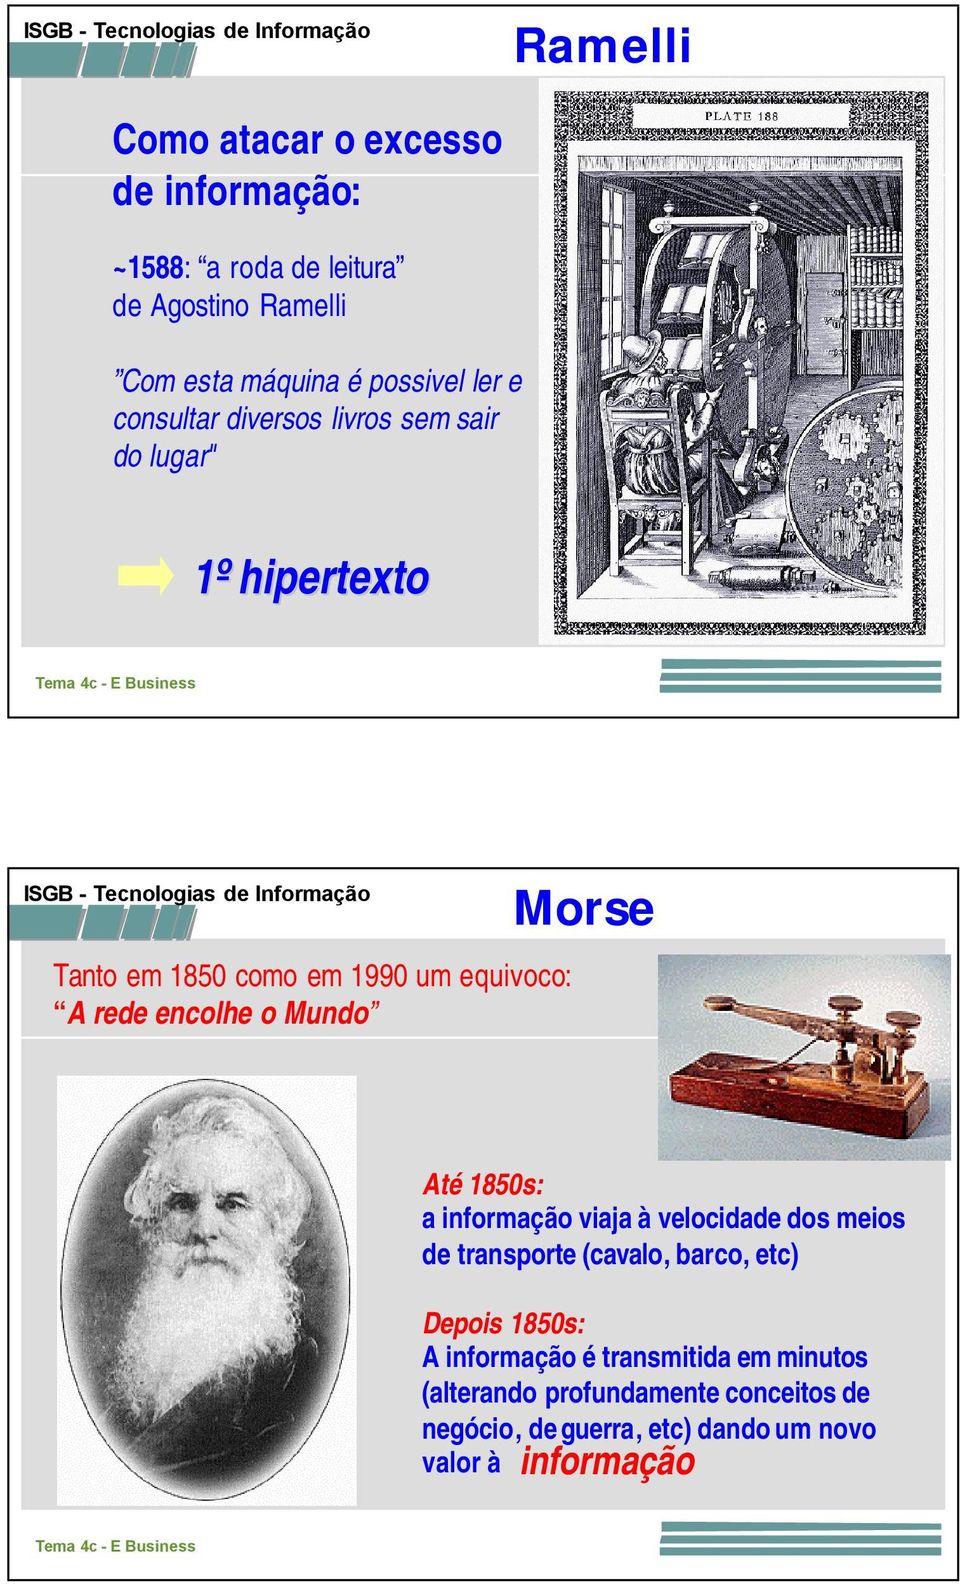 Mundo Morse Até 1850s: a informação viaja à velocidade dos meios de transporte (cavalo, barco, etc) Depois 1850s: A